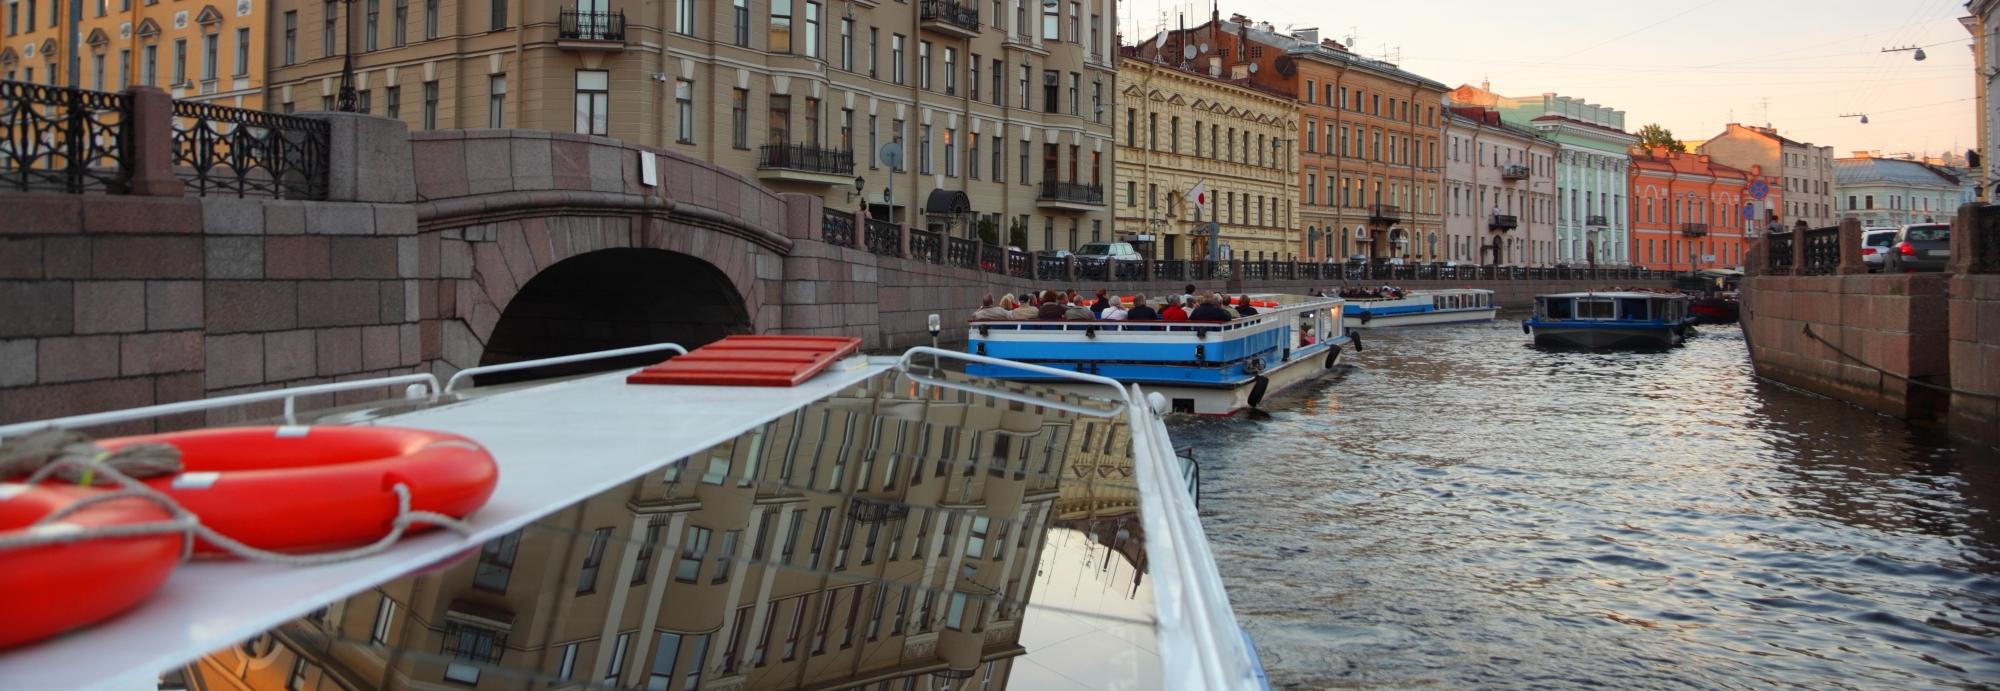 Экскурсия по рекам и каналам Санкт-Петербурга со скидкой до 61%